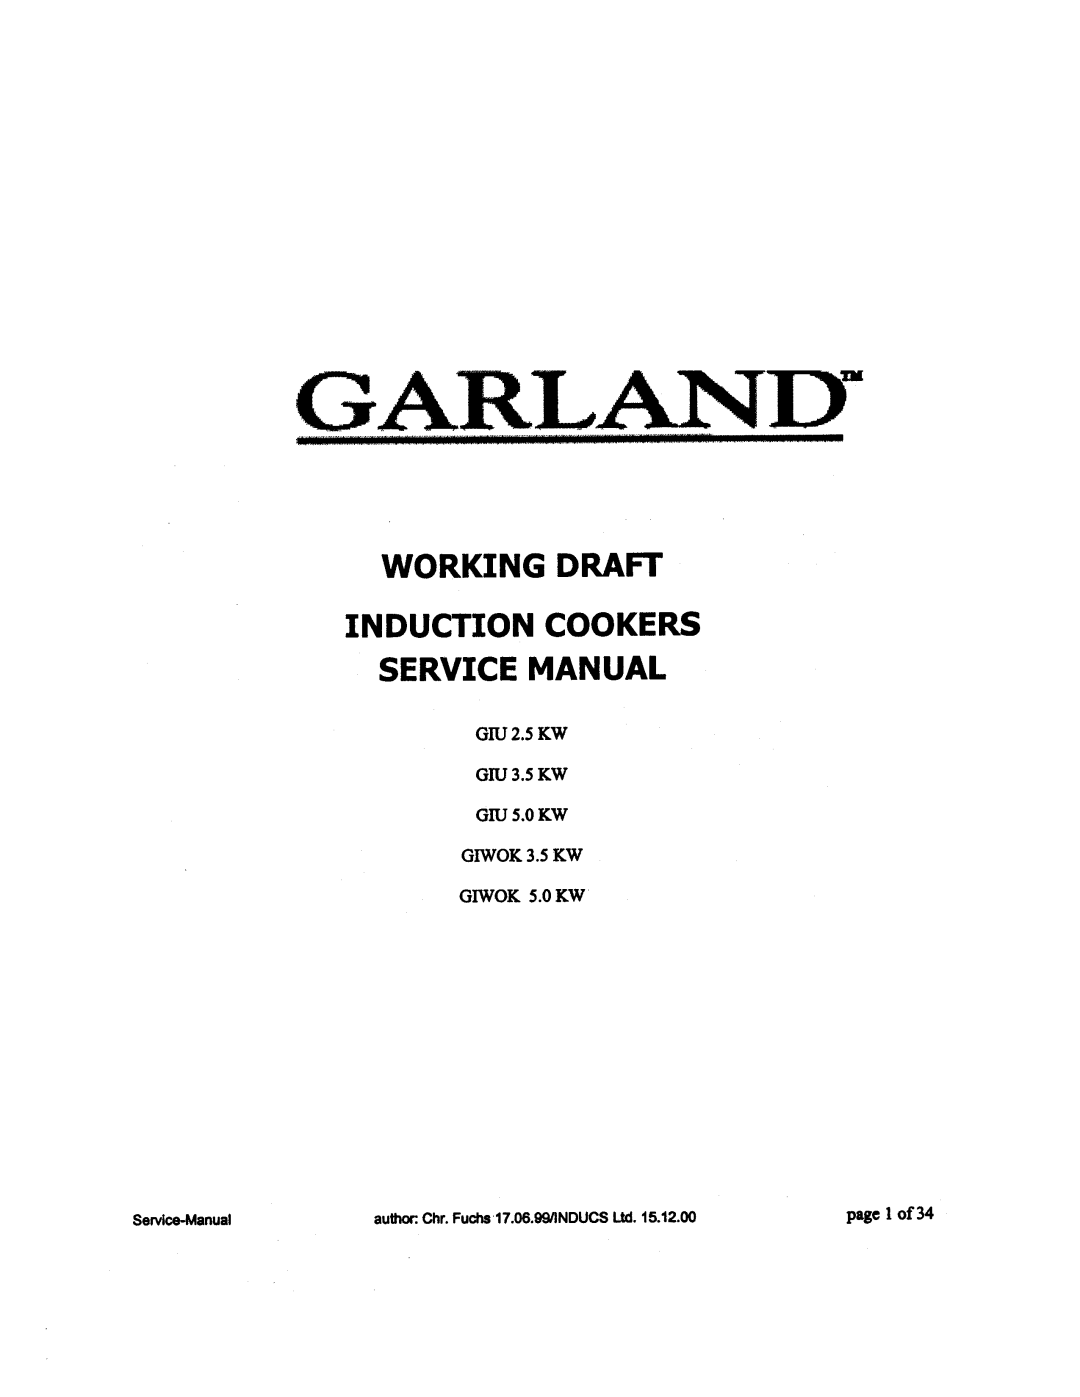 Garland GIU 3.5 KW, GIWOK 5.0 KW, GIU 2.5 KW, GIU 5.0 KW, GIWOK 3.5 KW manual 